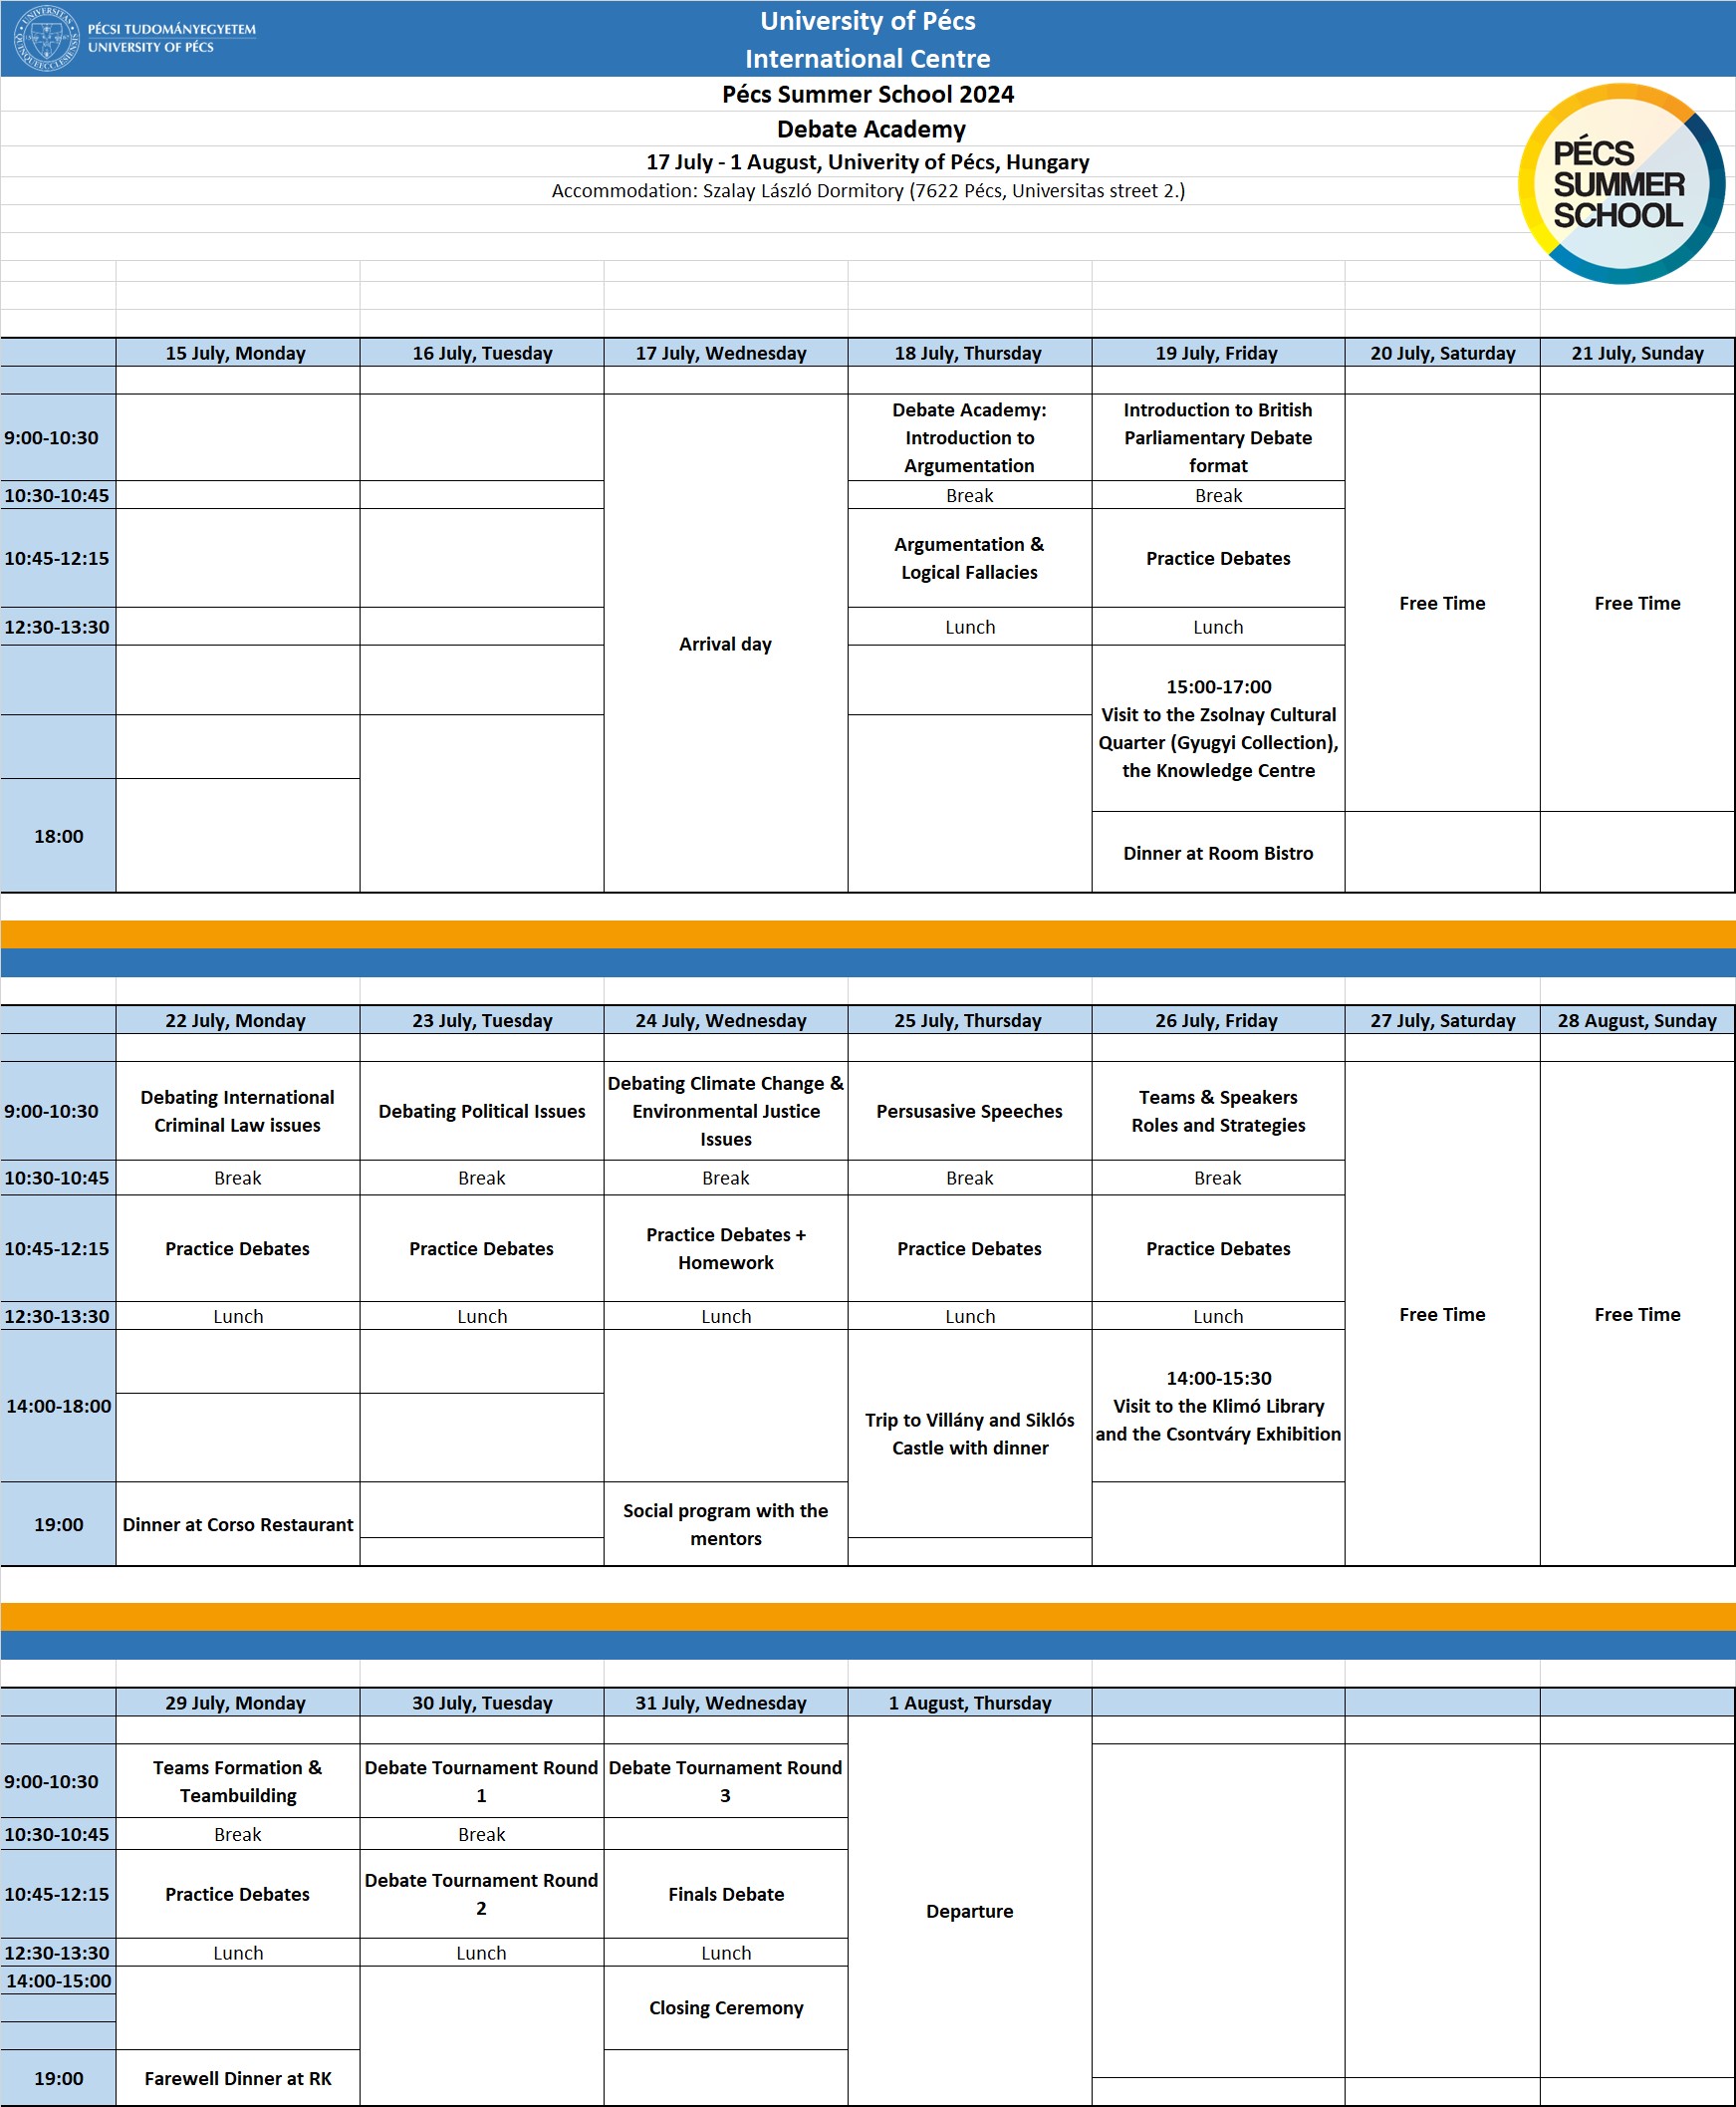 Program schedule